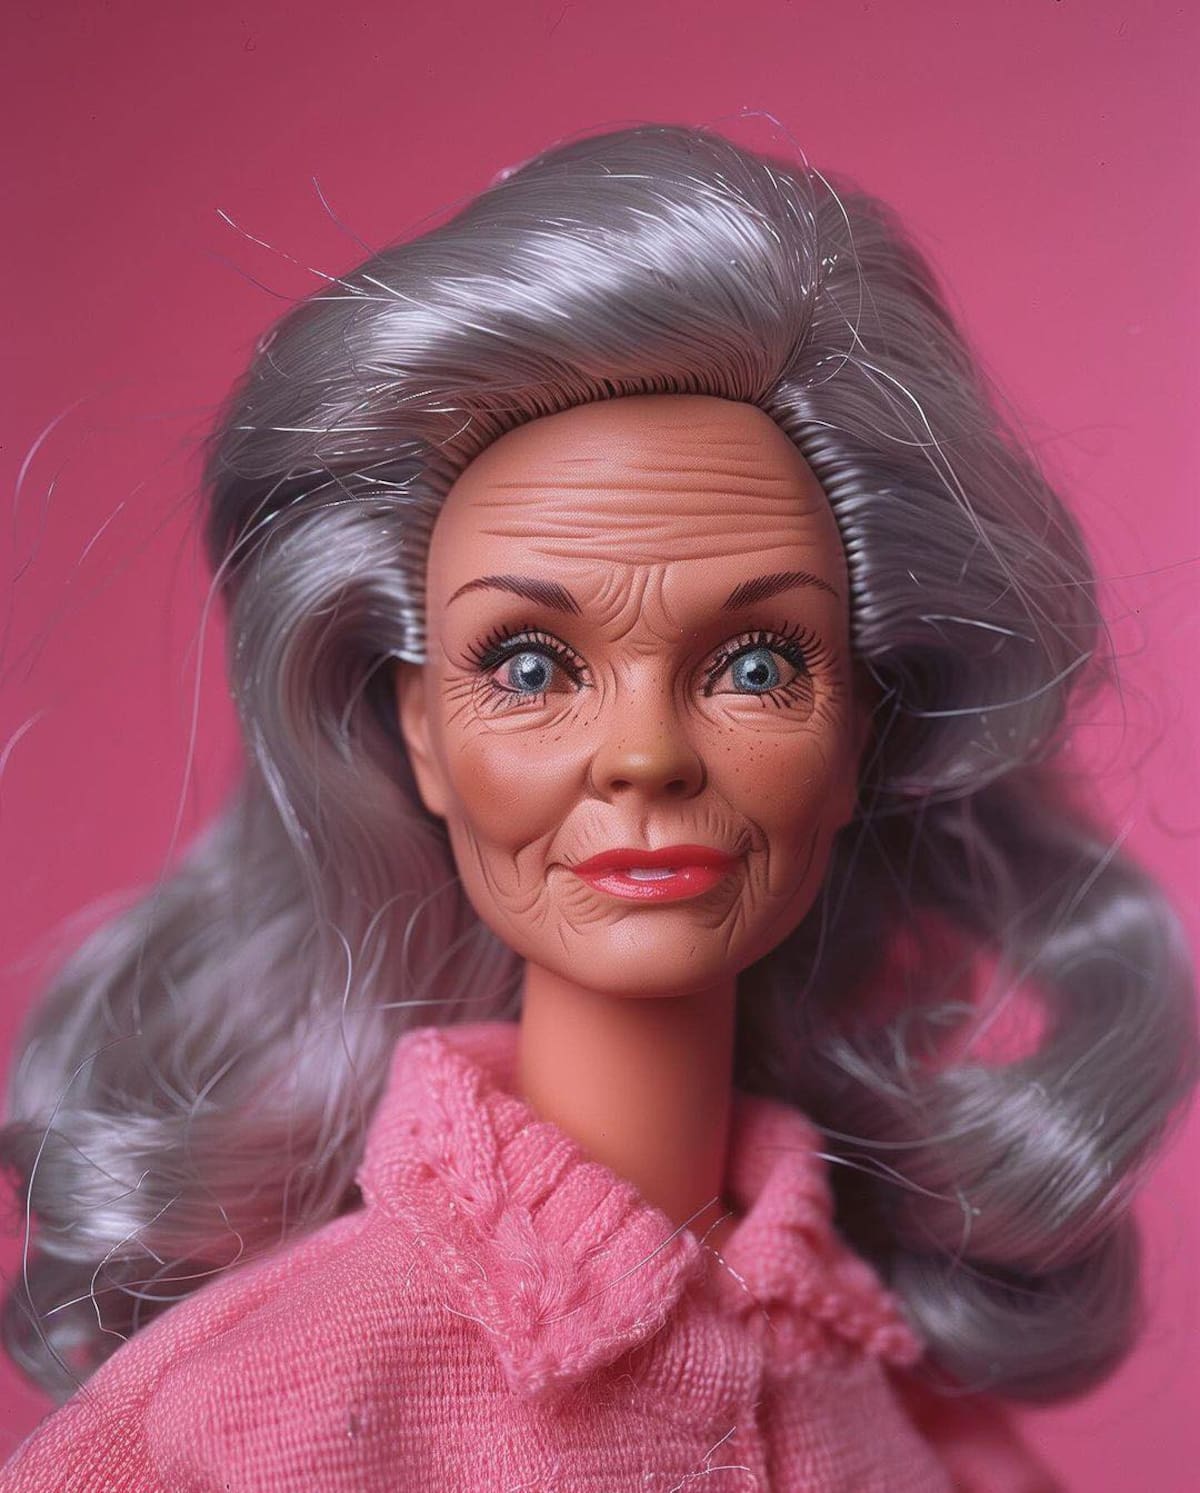 En 1968, Barbie presentó a Christie, su primera muñeca afroamericana. ¡Un gran paso hacia la inclusión y representación! (instagram)